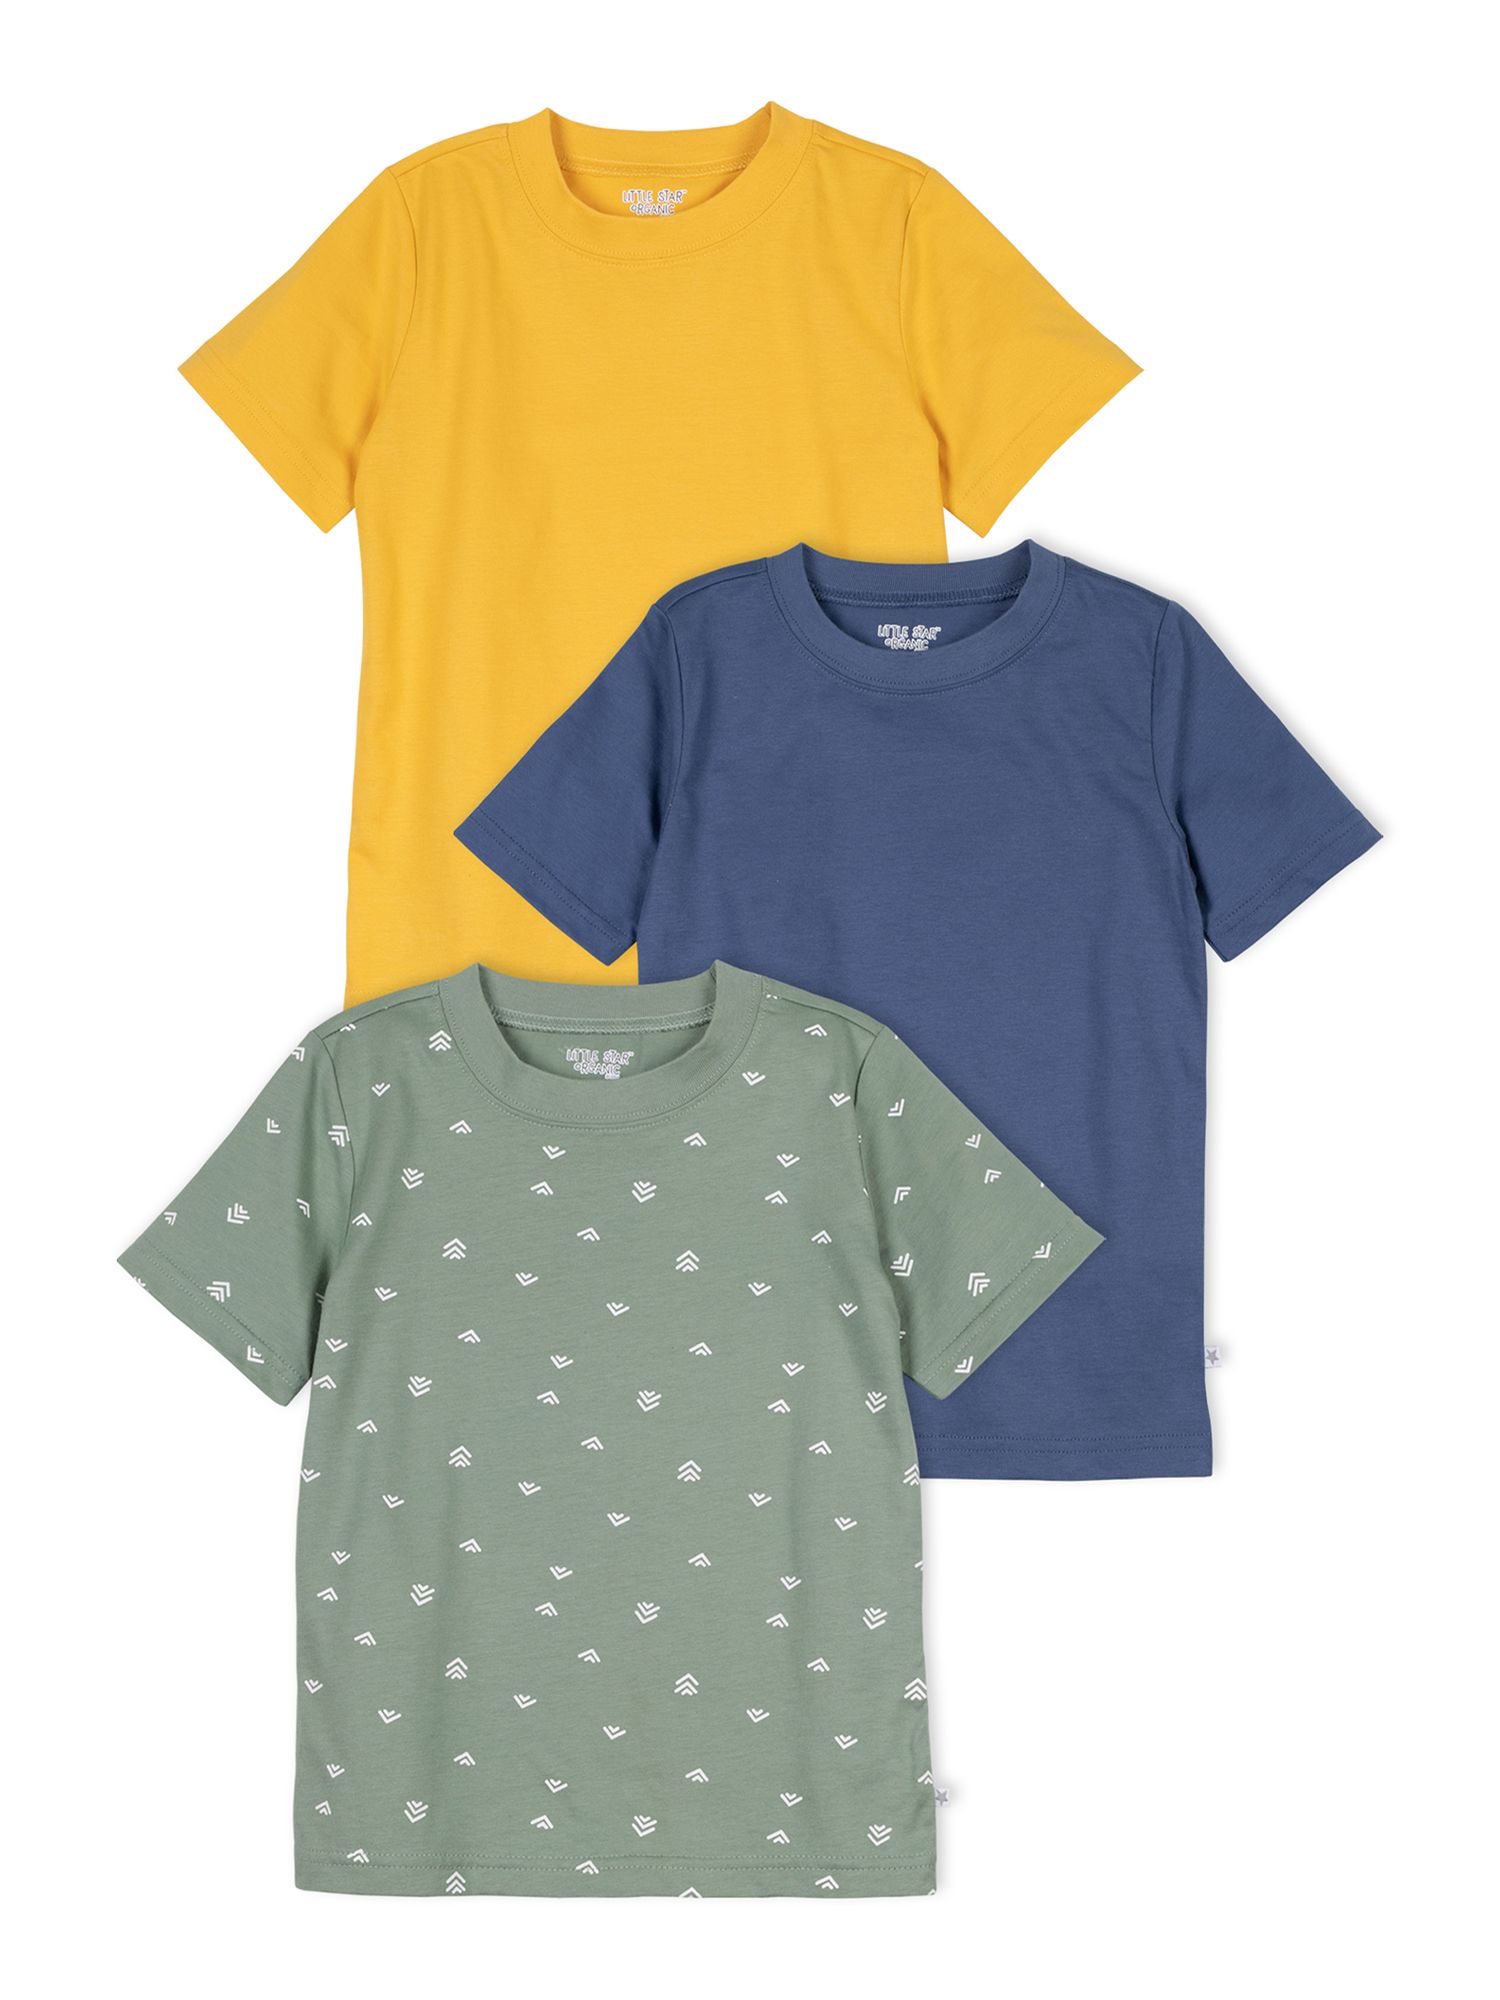 Little Star Organic Toddler Boy 3 Pk Short Sleeve Shirts, Size 12 Months - 5T | Walmart (US)